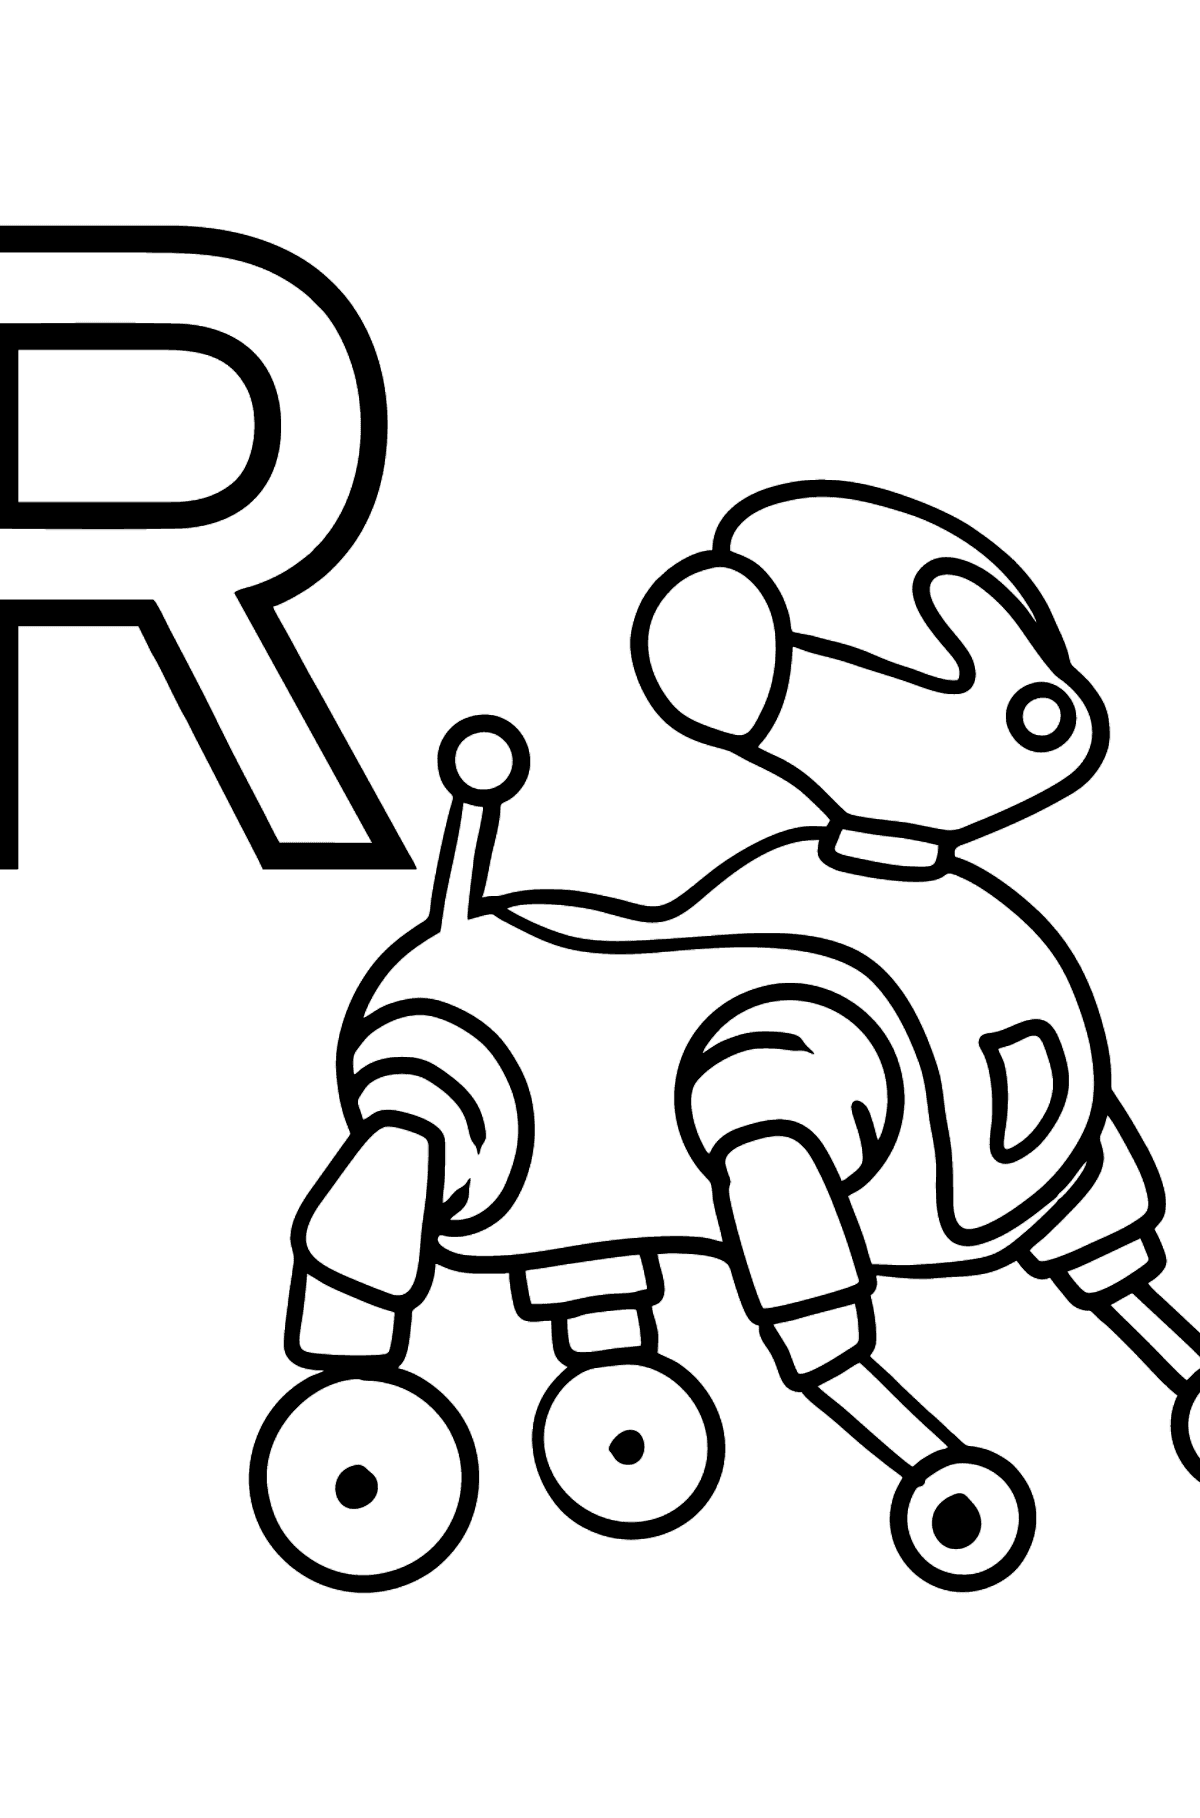 Coloriage - Lettre française R - ROBOT - Coloriages pour les Enfants